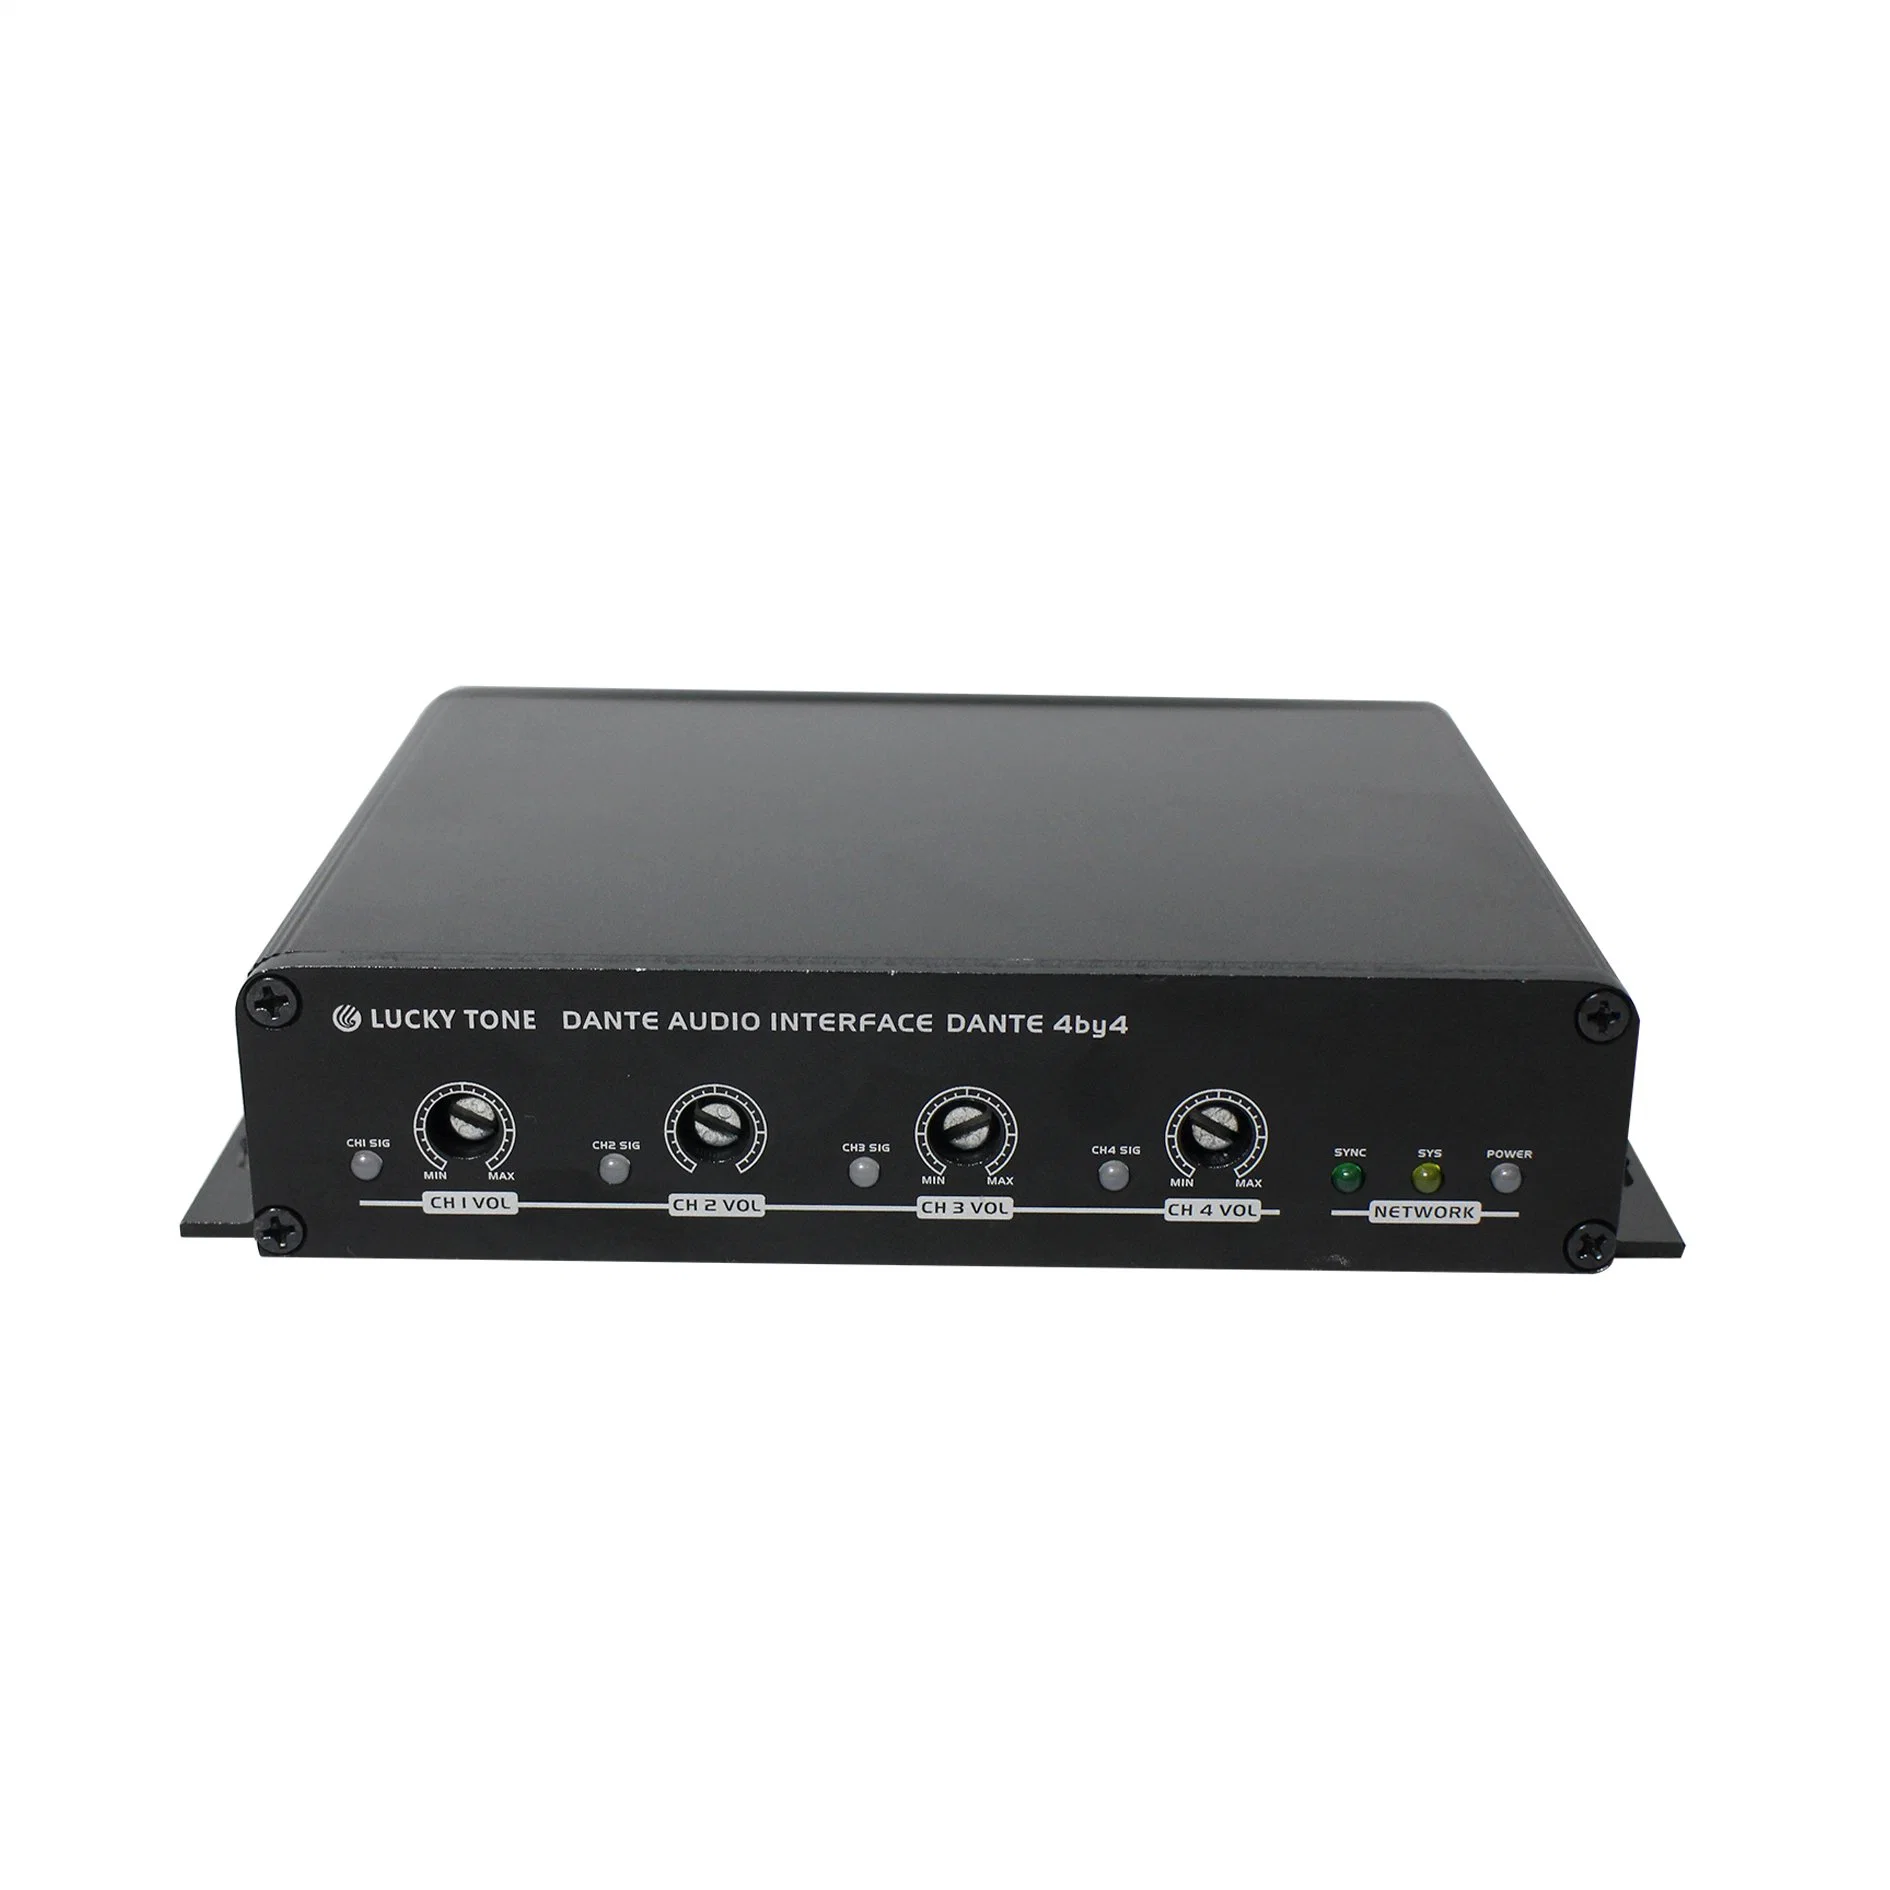 Red de Profesionales de Dante 4 en 4 de la interfaz de Audio Sound Converter/transmisor con Control de volumen